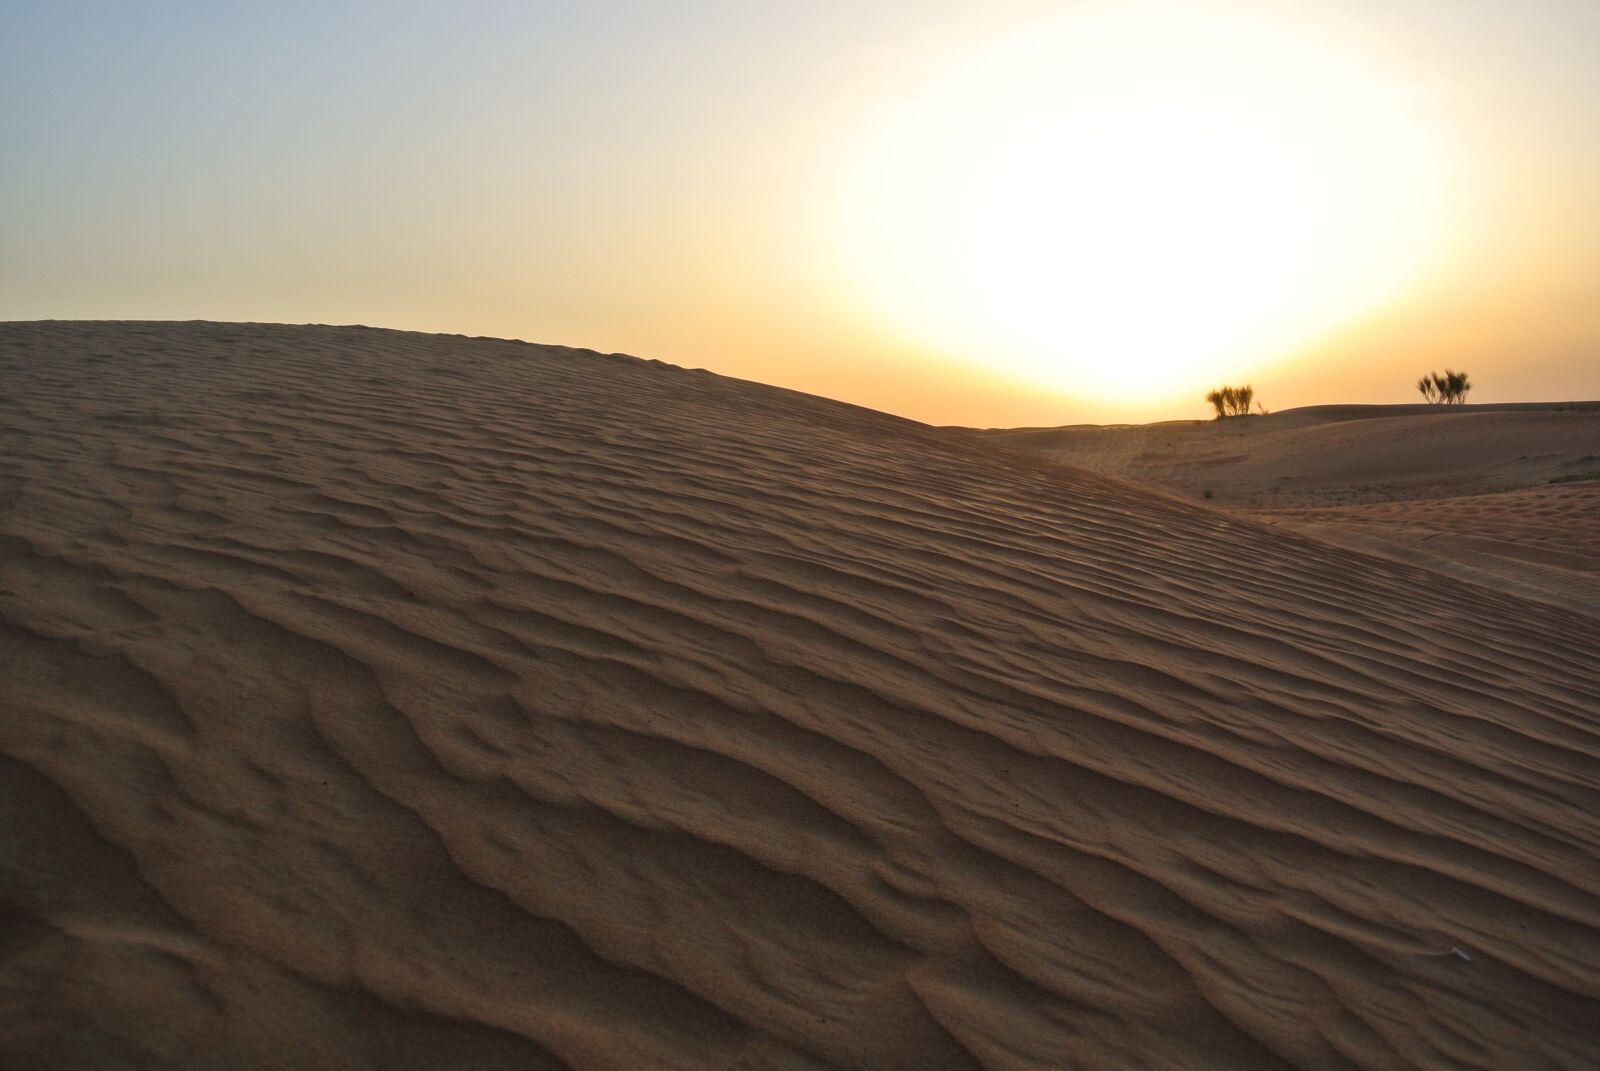 Nikon 1 Nikkor VR 10-30mm F3.5-5.6 sample photo. Desert, sunset, camels photography